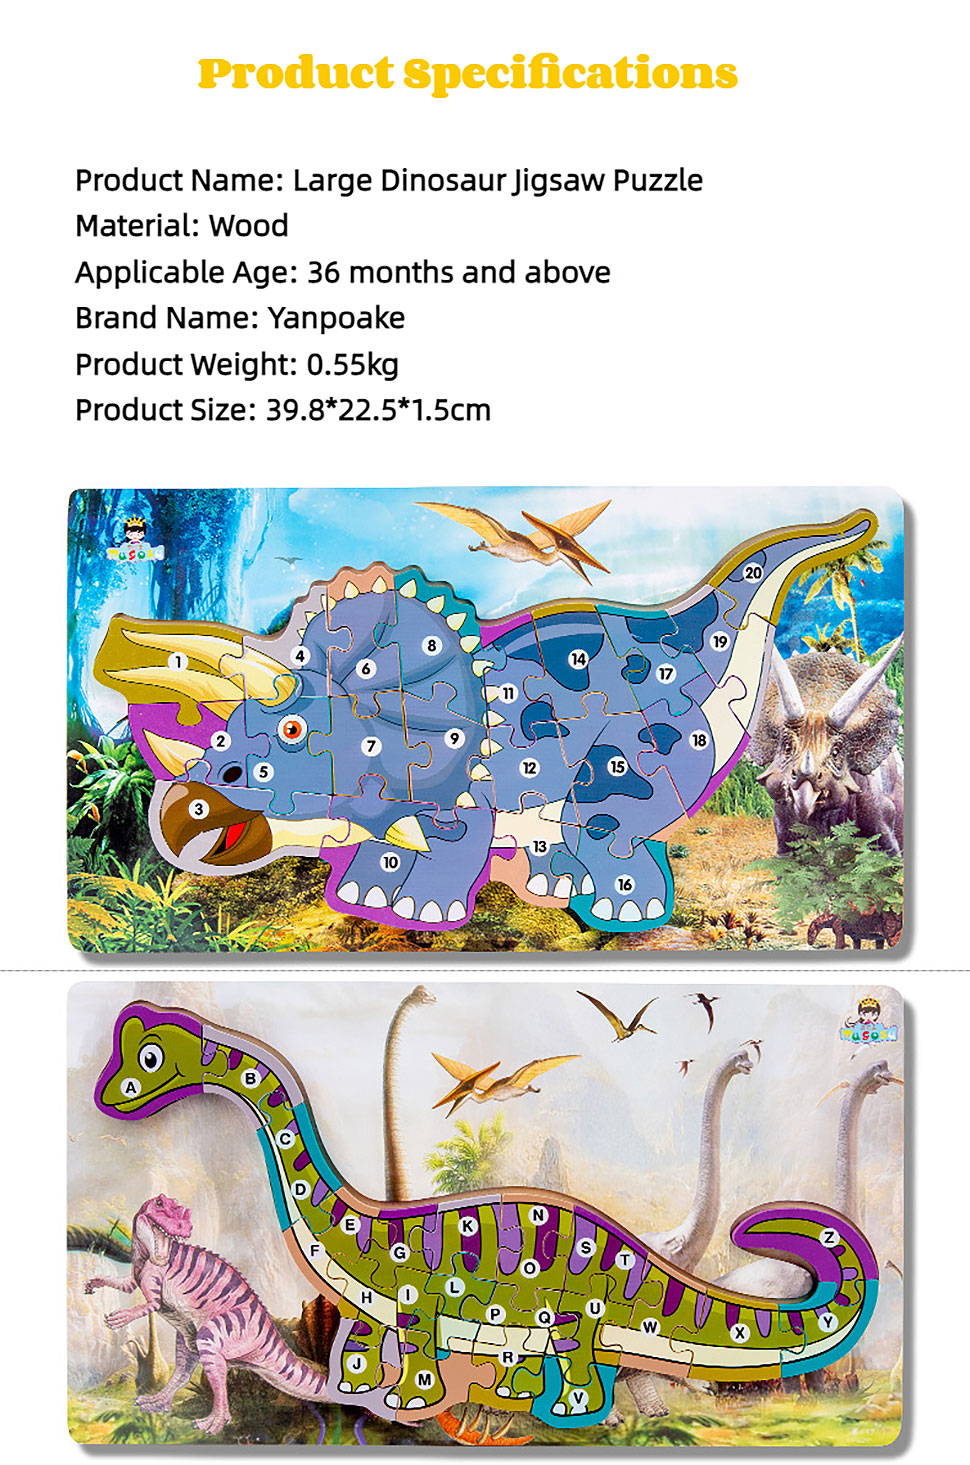 ligneus Dinosaurum Alphabetum et Numeri-3D-Jigsaw-Puzzle-Set-pro-Kids-(7)